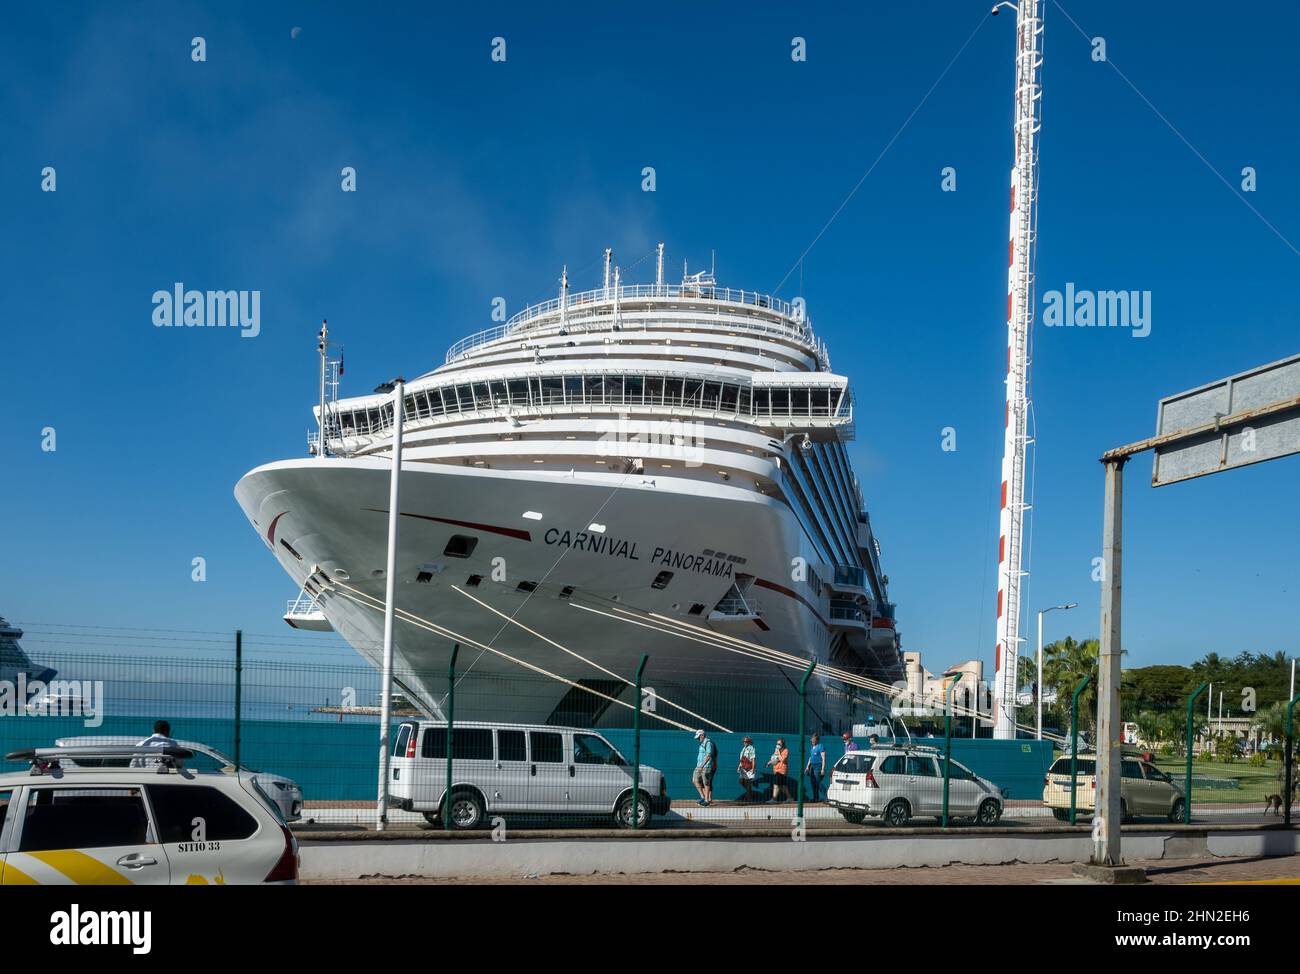 A cruise ship docked at the port. Puerto Vallarta, Jalisco, Mexico. Stock Photo